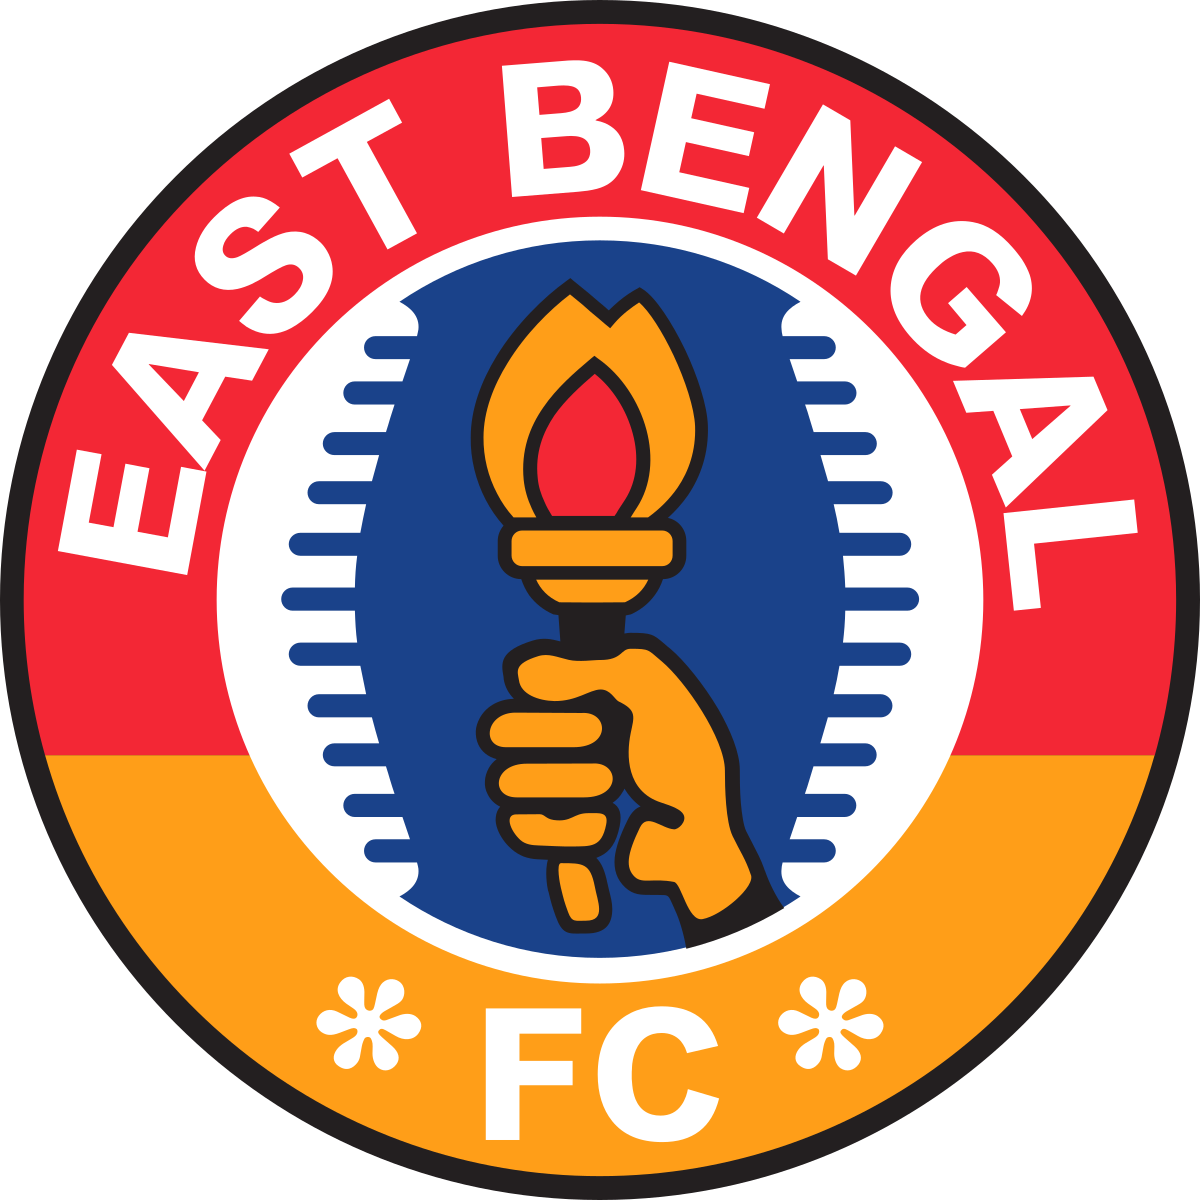 East Bengal W logo